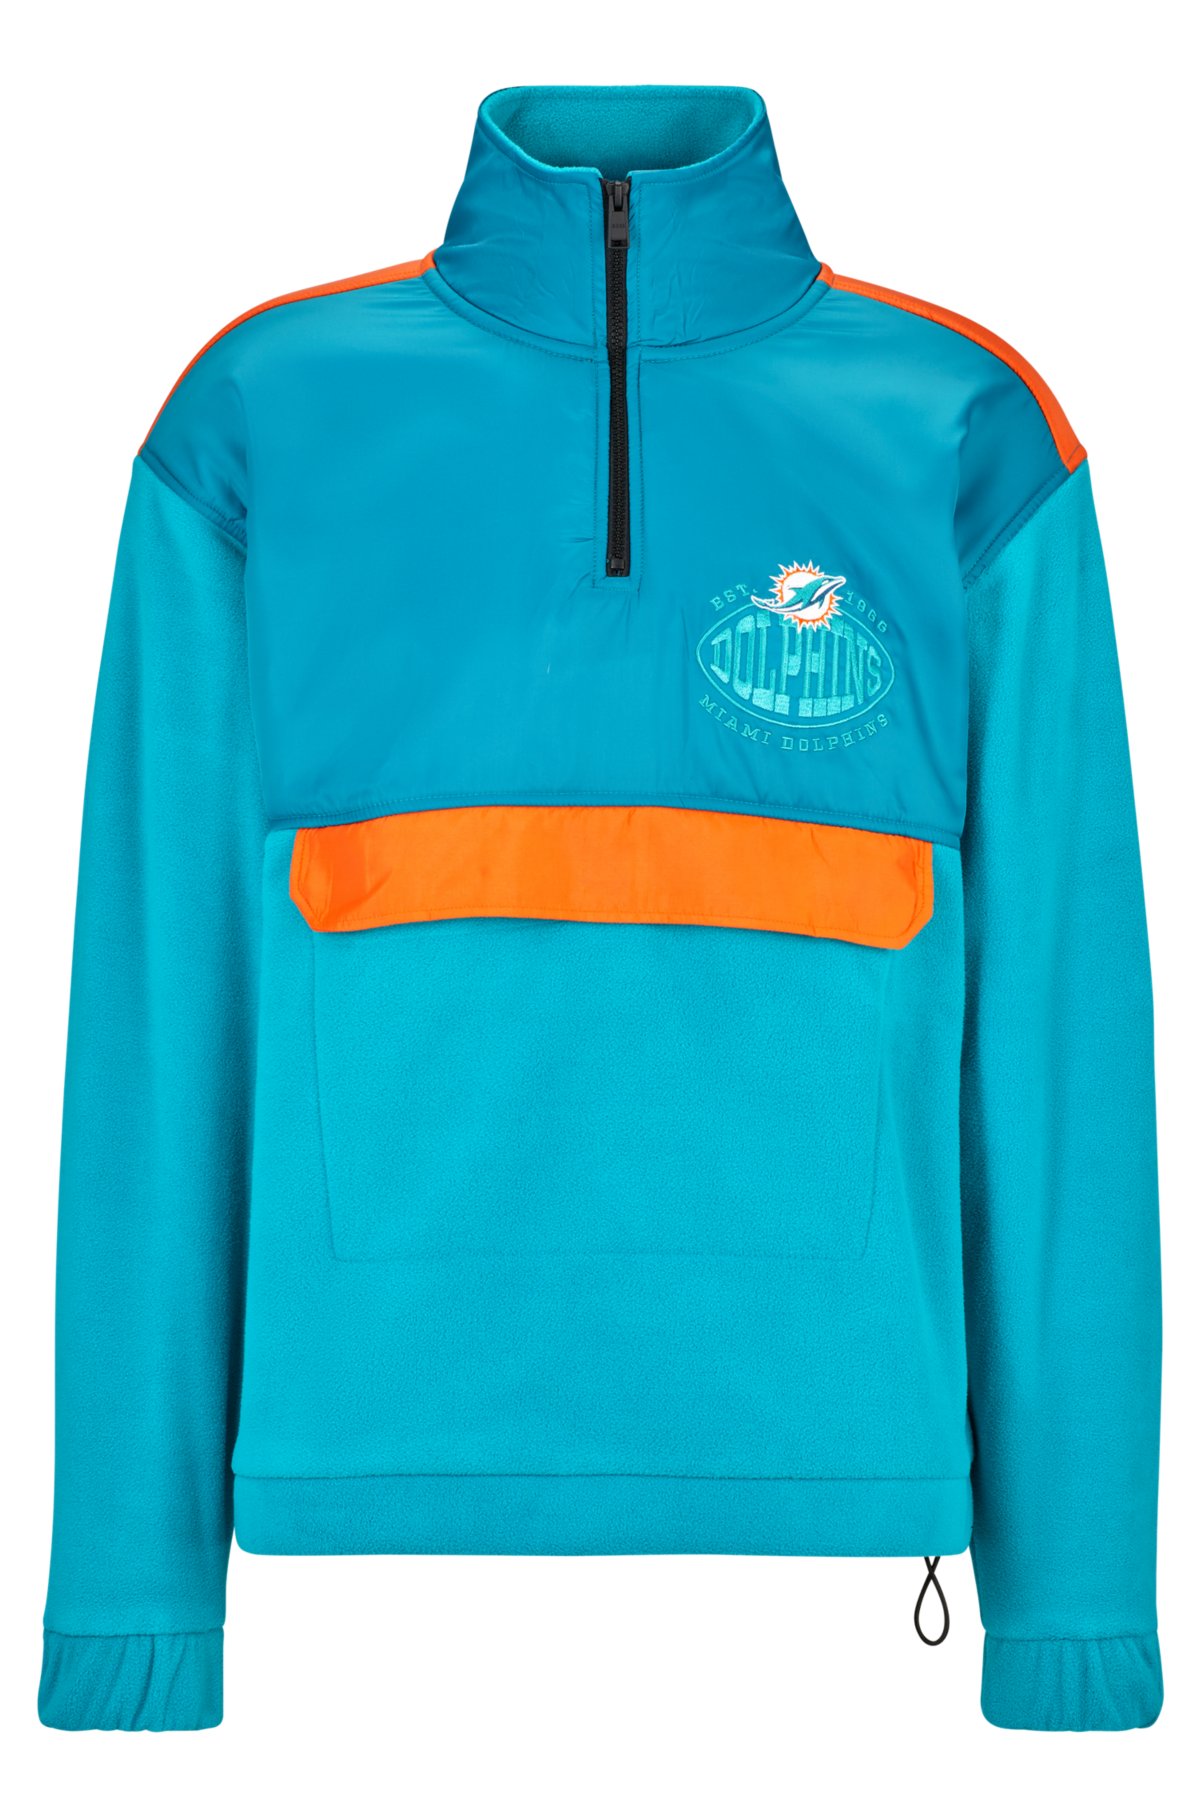  BOSS x NFL zip-neck sweatshirt with collaborative branding, Dolphins